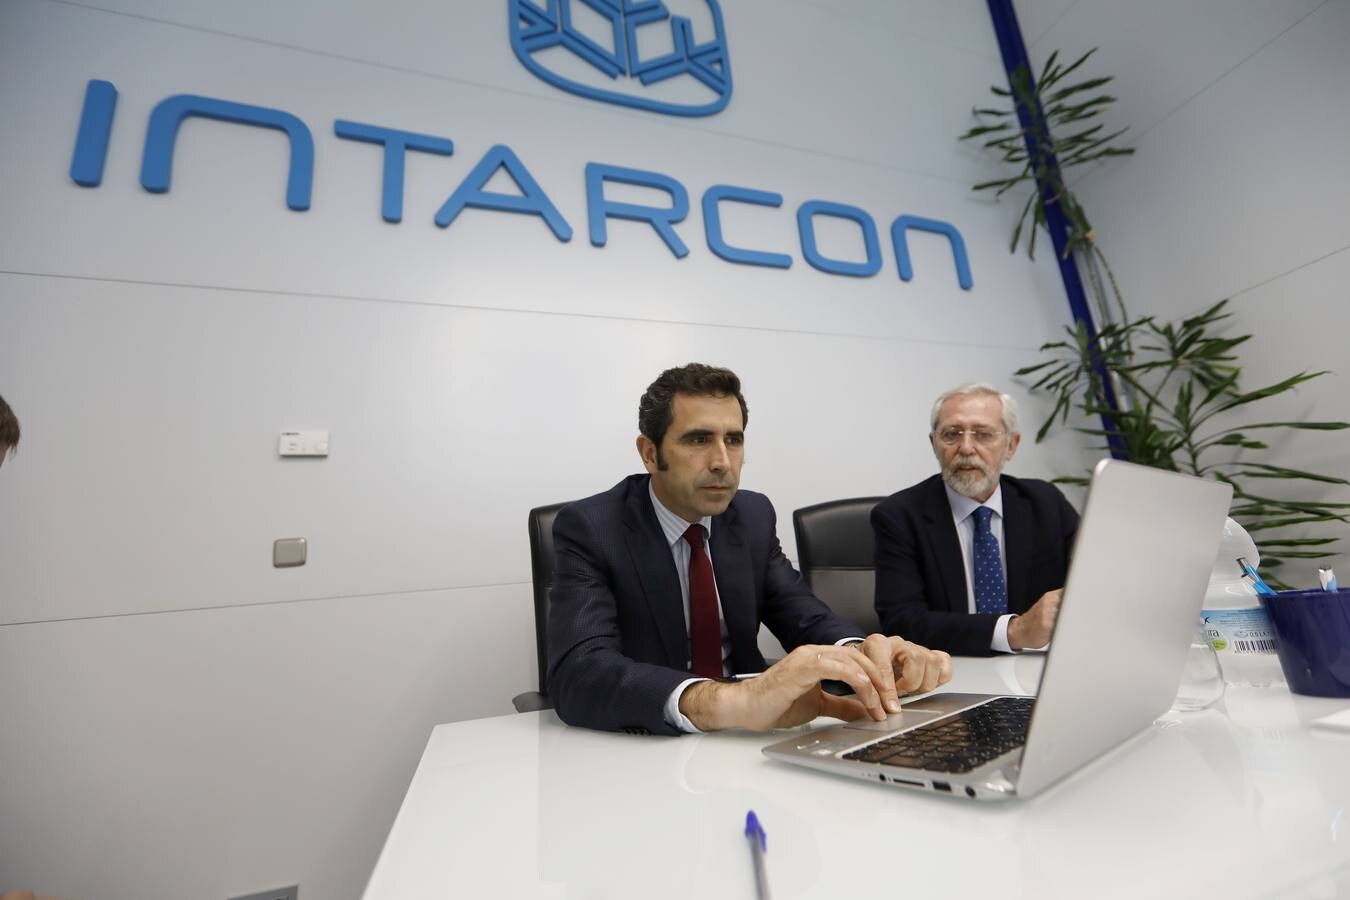 José María Raya, director general de Intarcon, y Aurelio García, presidente del grupo, en las oficinas de la empresa